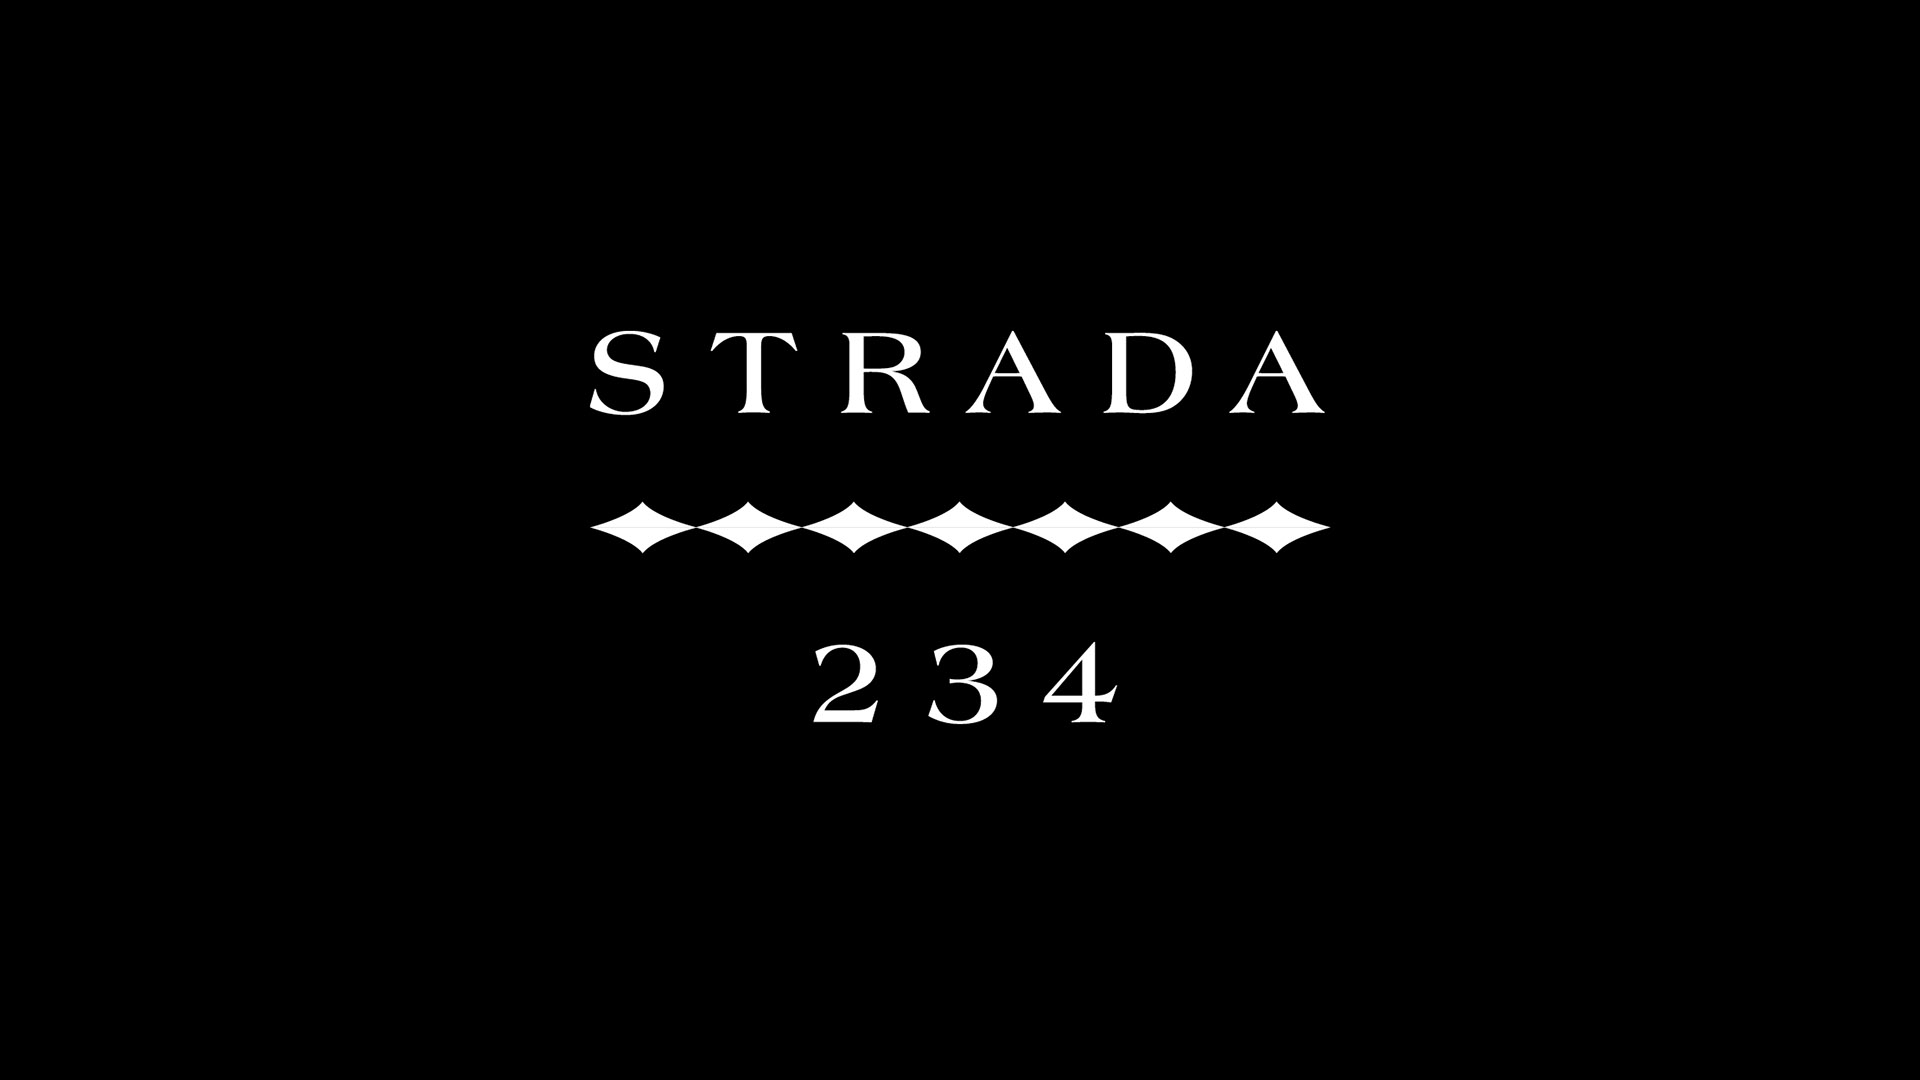 strada234 white logo on black